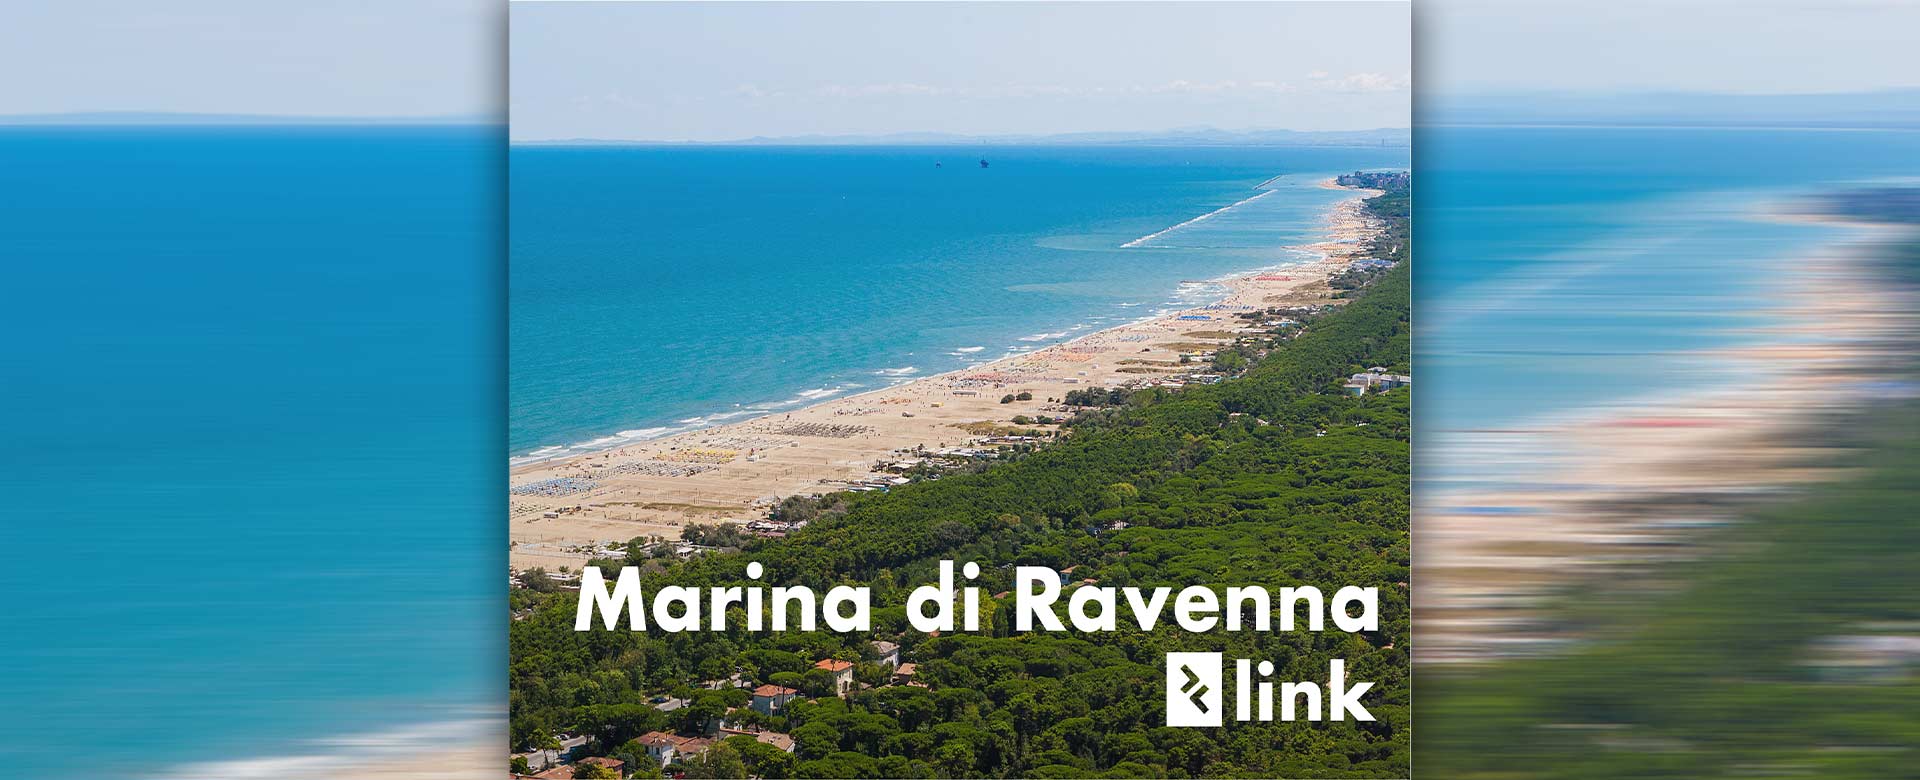 Immagine di Marina di Ravenna